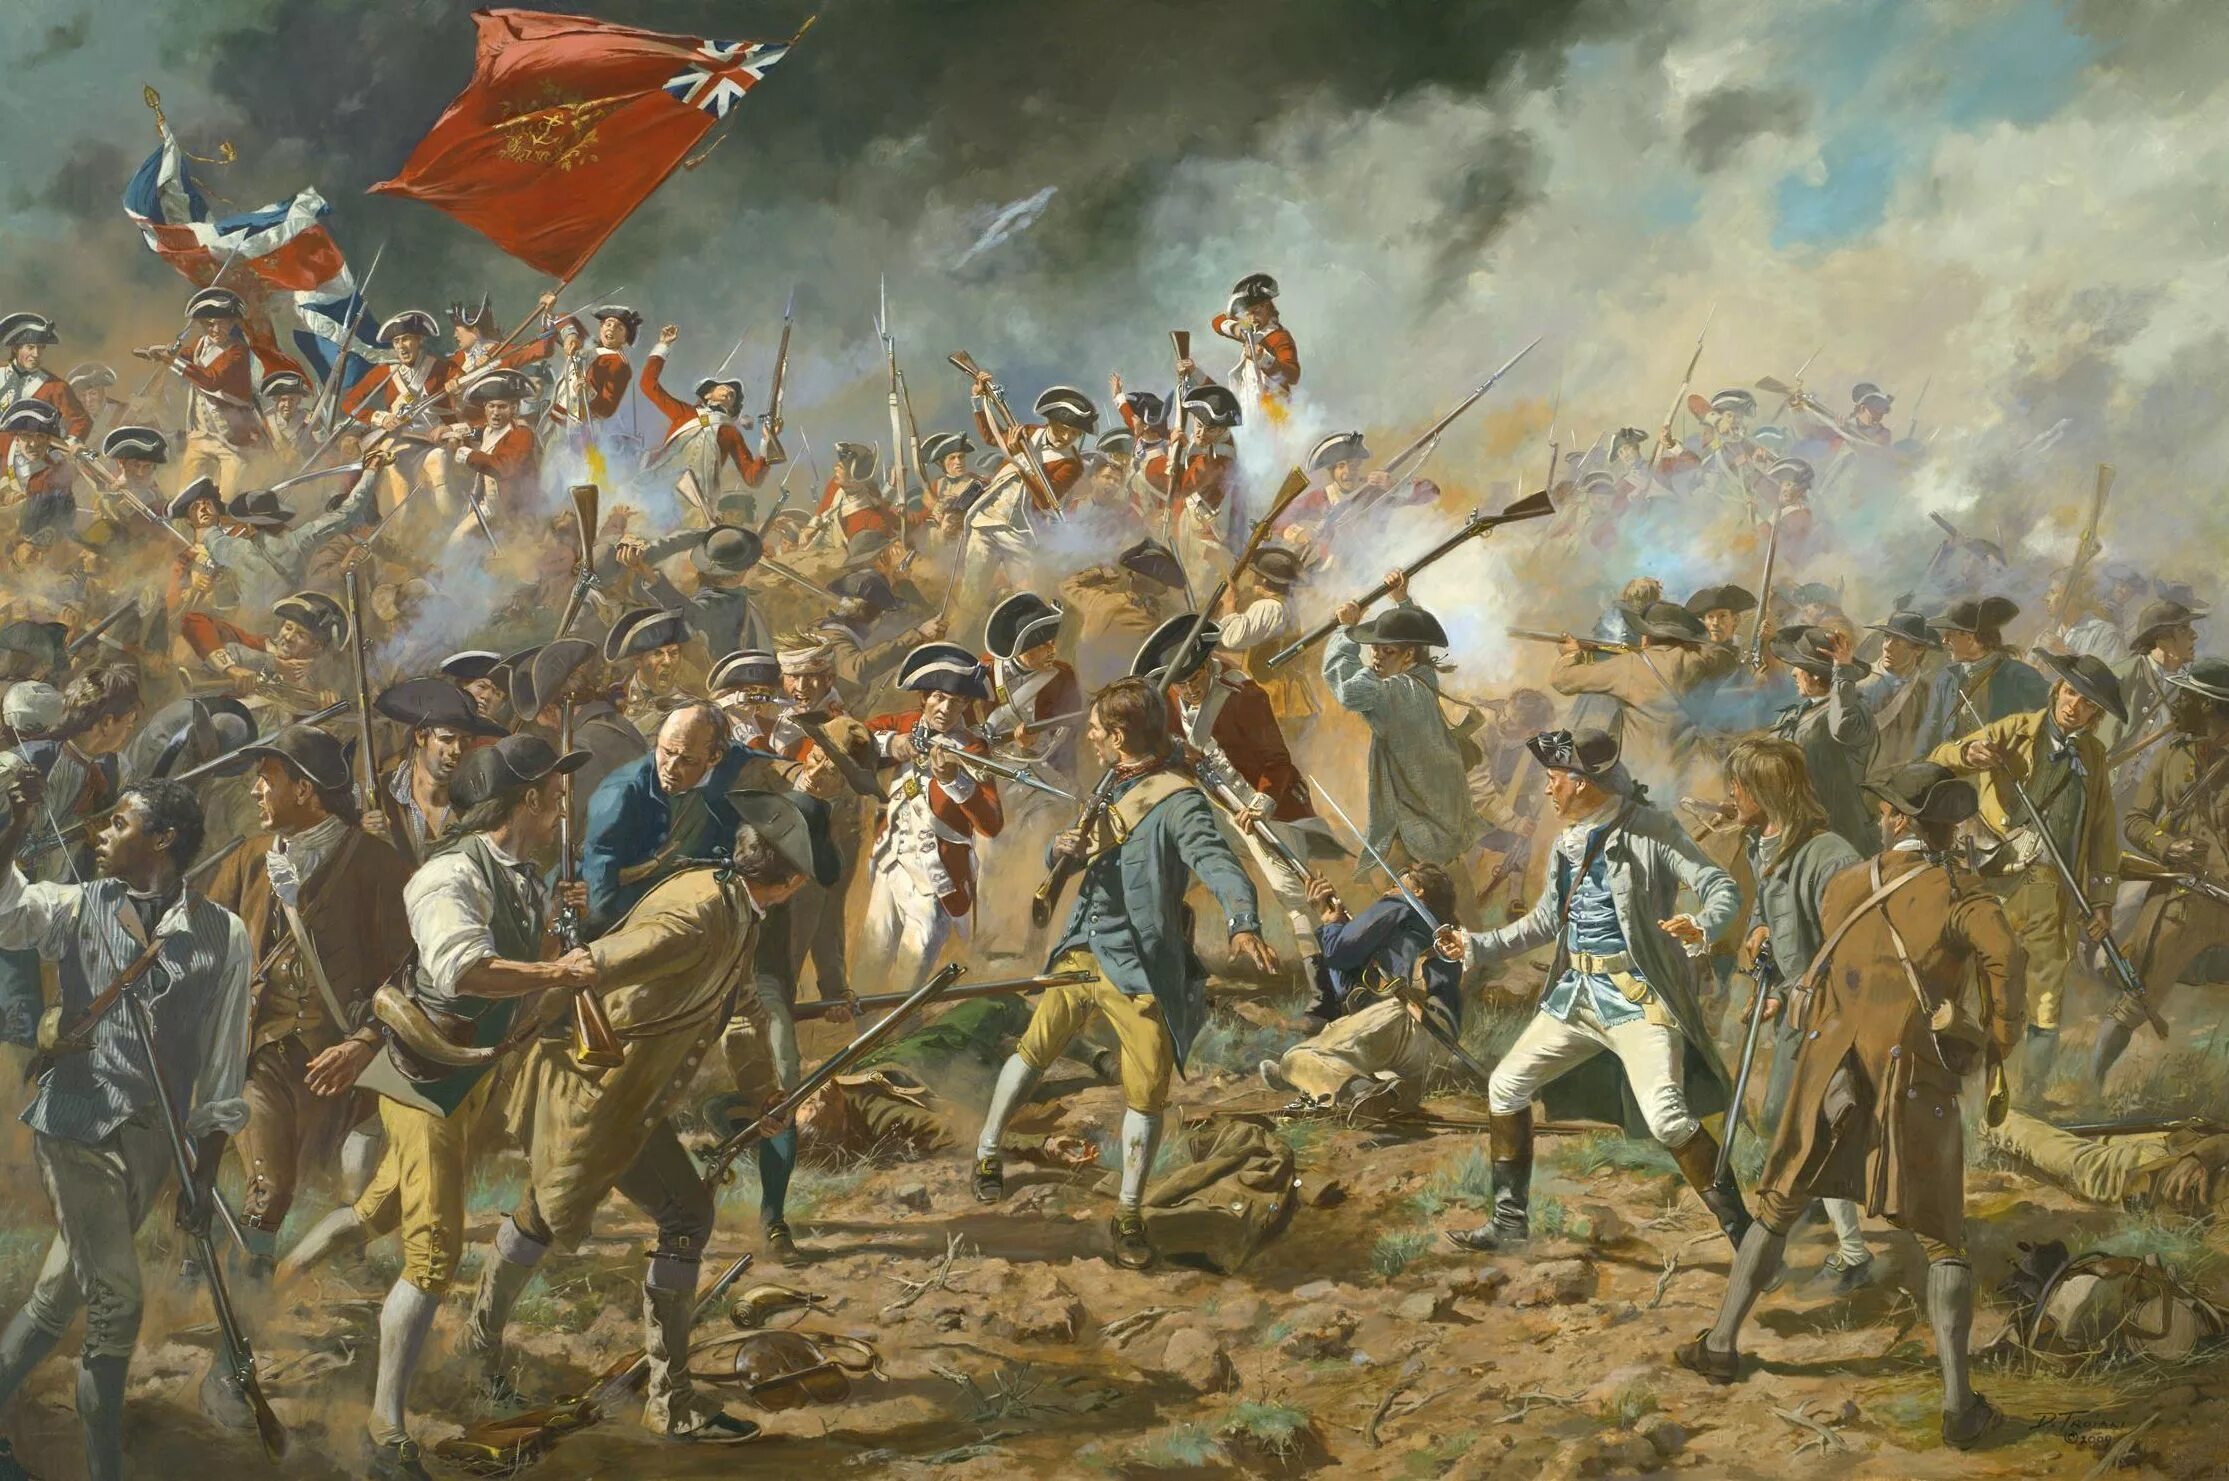 Сражение люди. Война за независимость США 1775-1783. Война за независимость США 1775. Война за независимость США Банкер Хилл. Банкер Хилл битва.